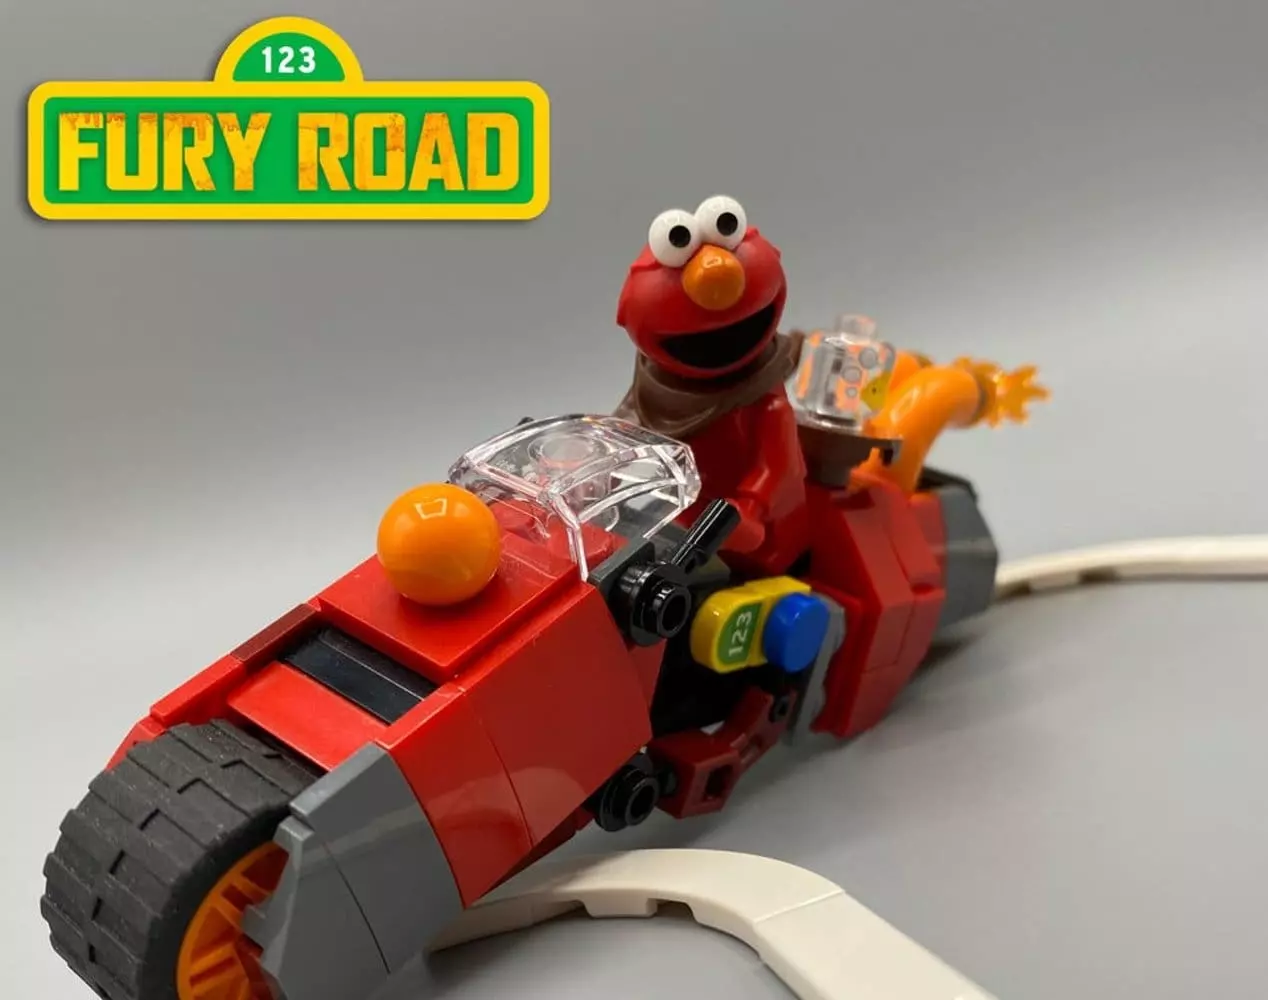 Elmo's motorcycle